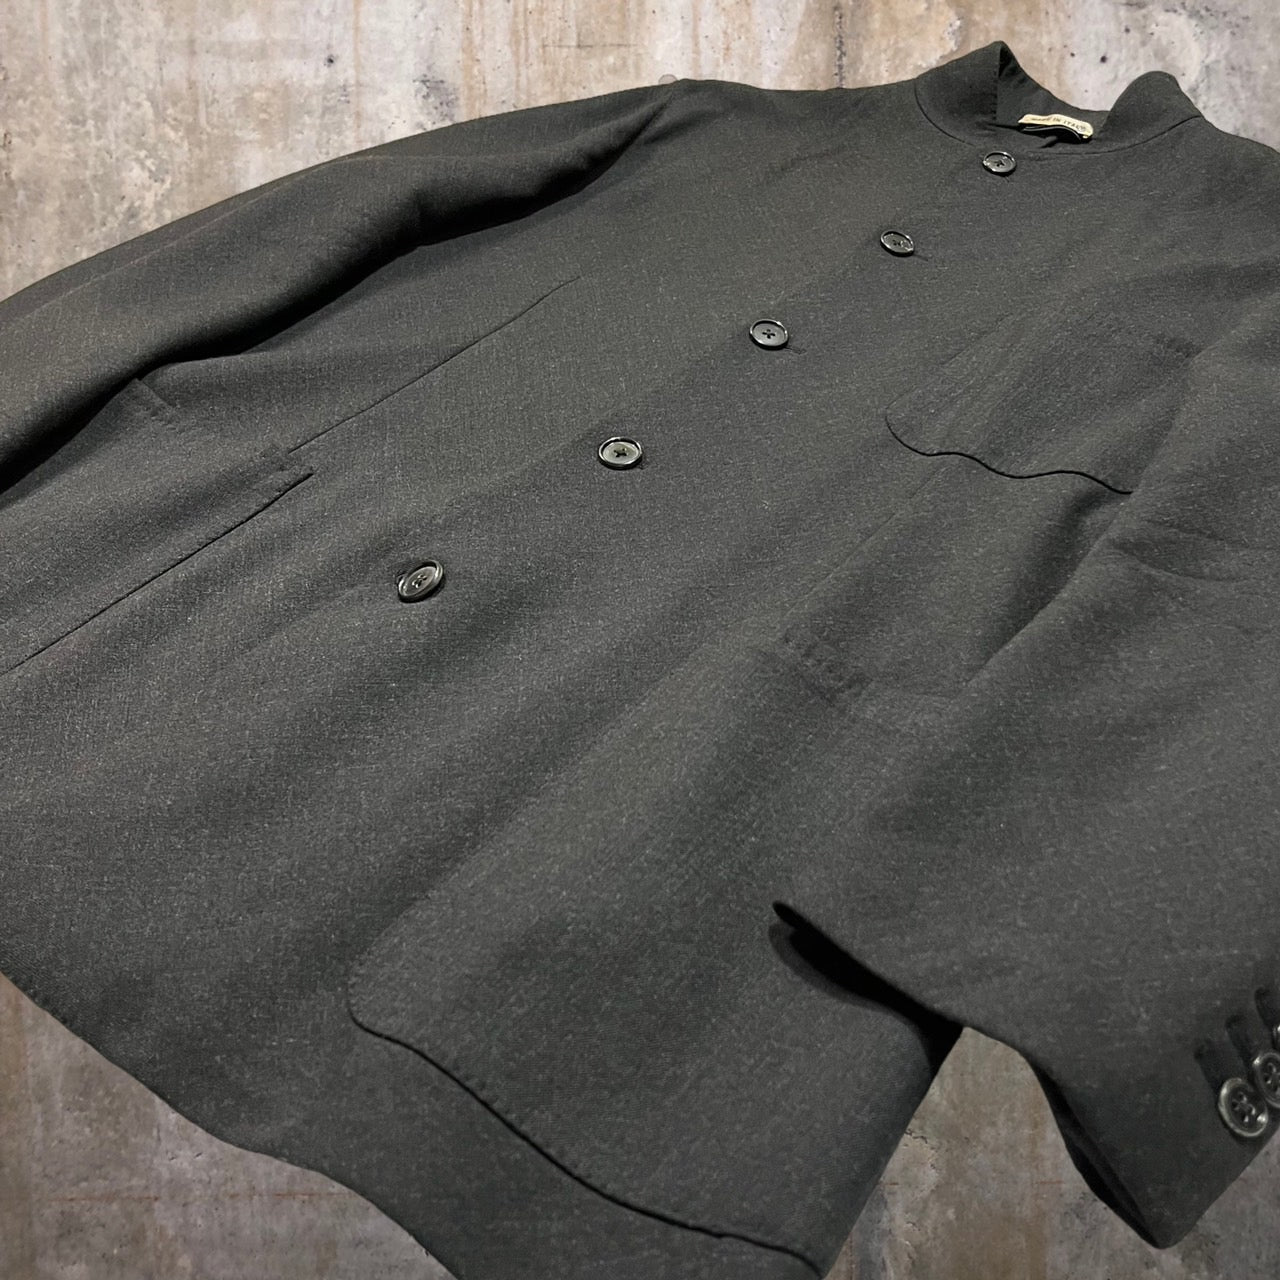 HERMES(エルメス)  stand collar wool jacket/スタンドカラーウールジャケット/マオカラージャケットテーラードジャケット 表記無し(XLサイズ程度) チャコールグレー